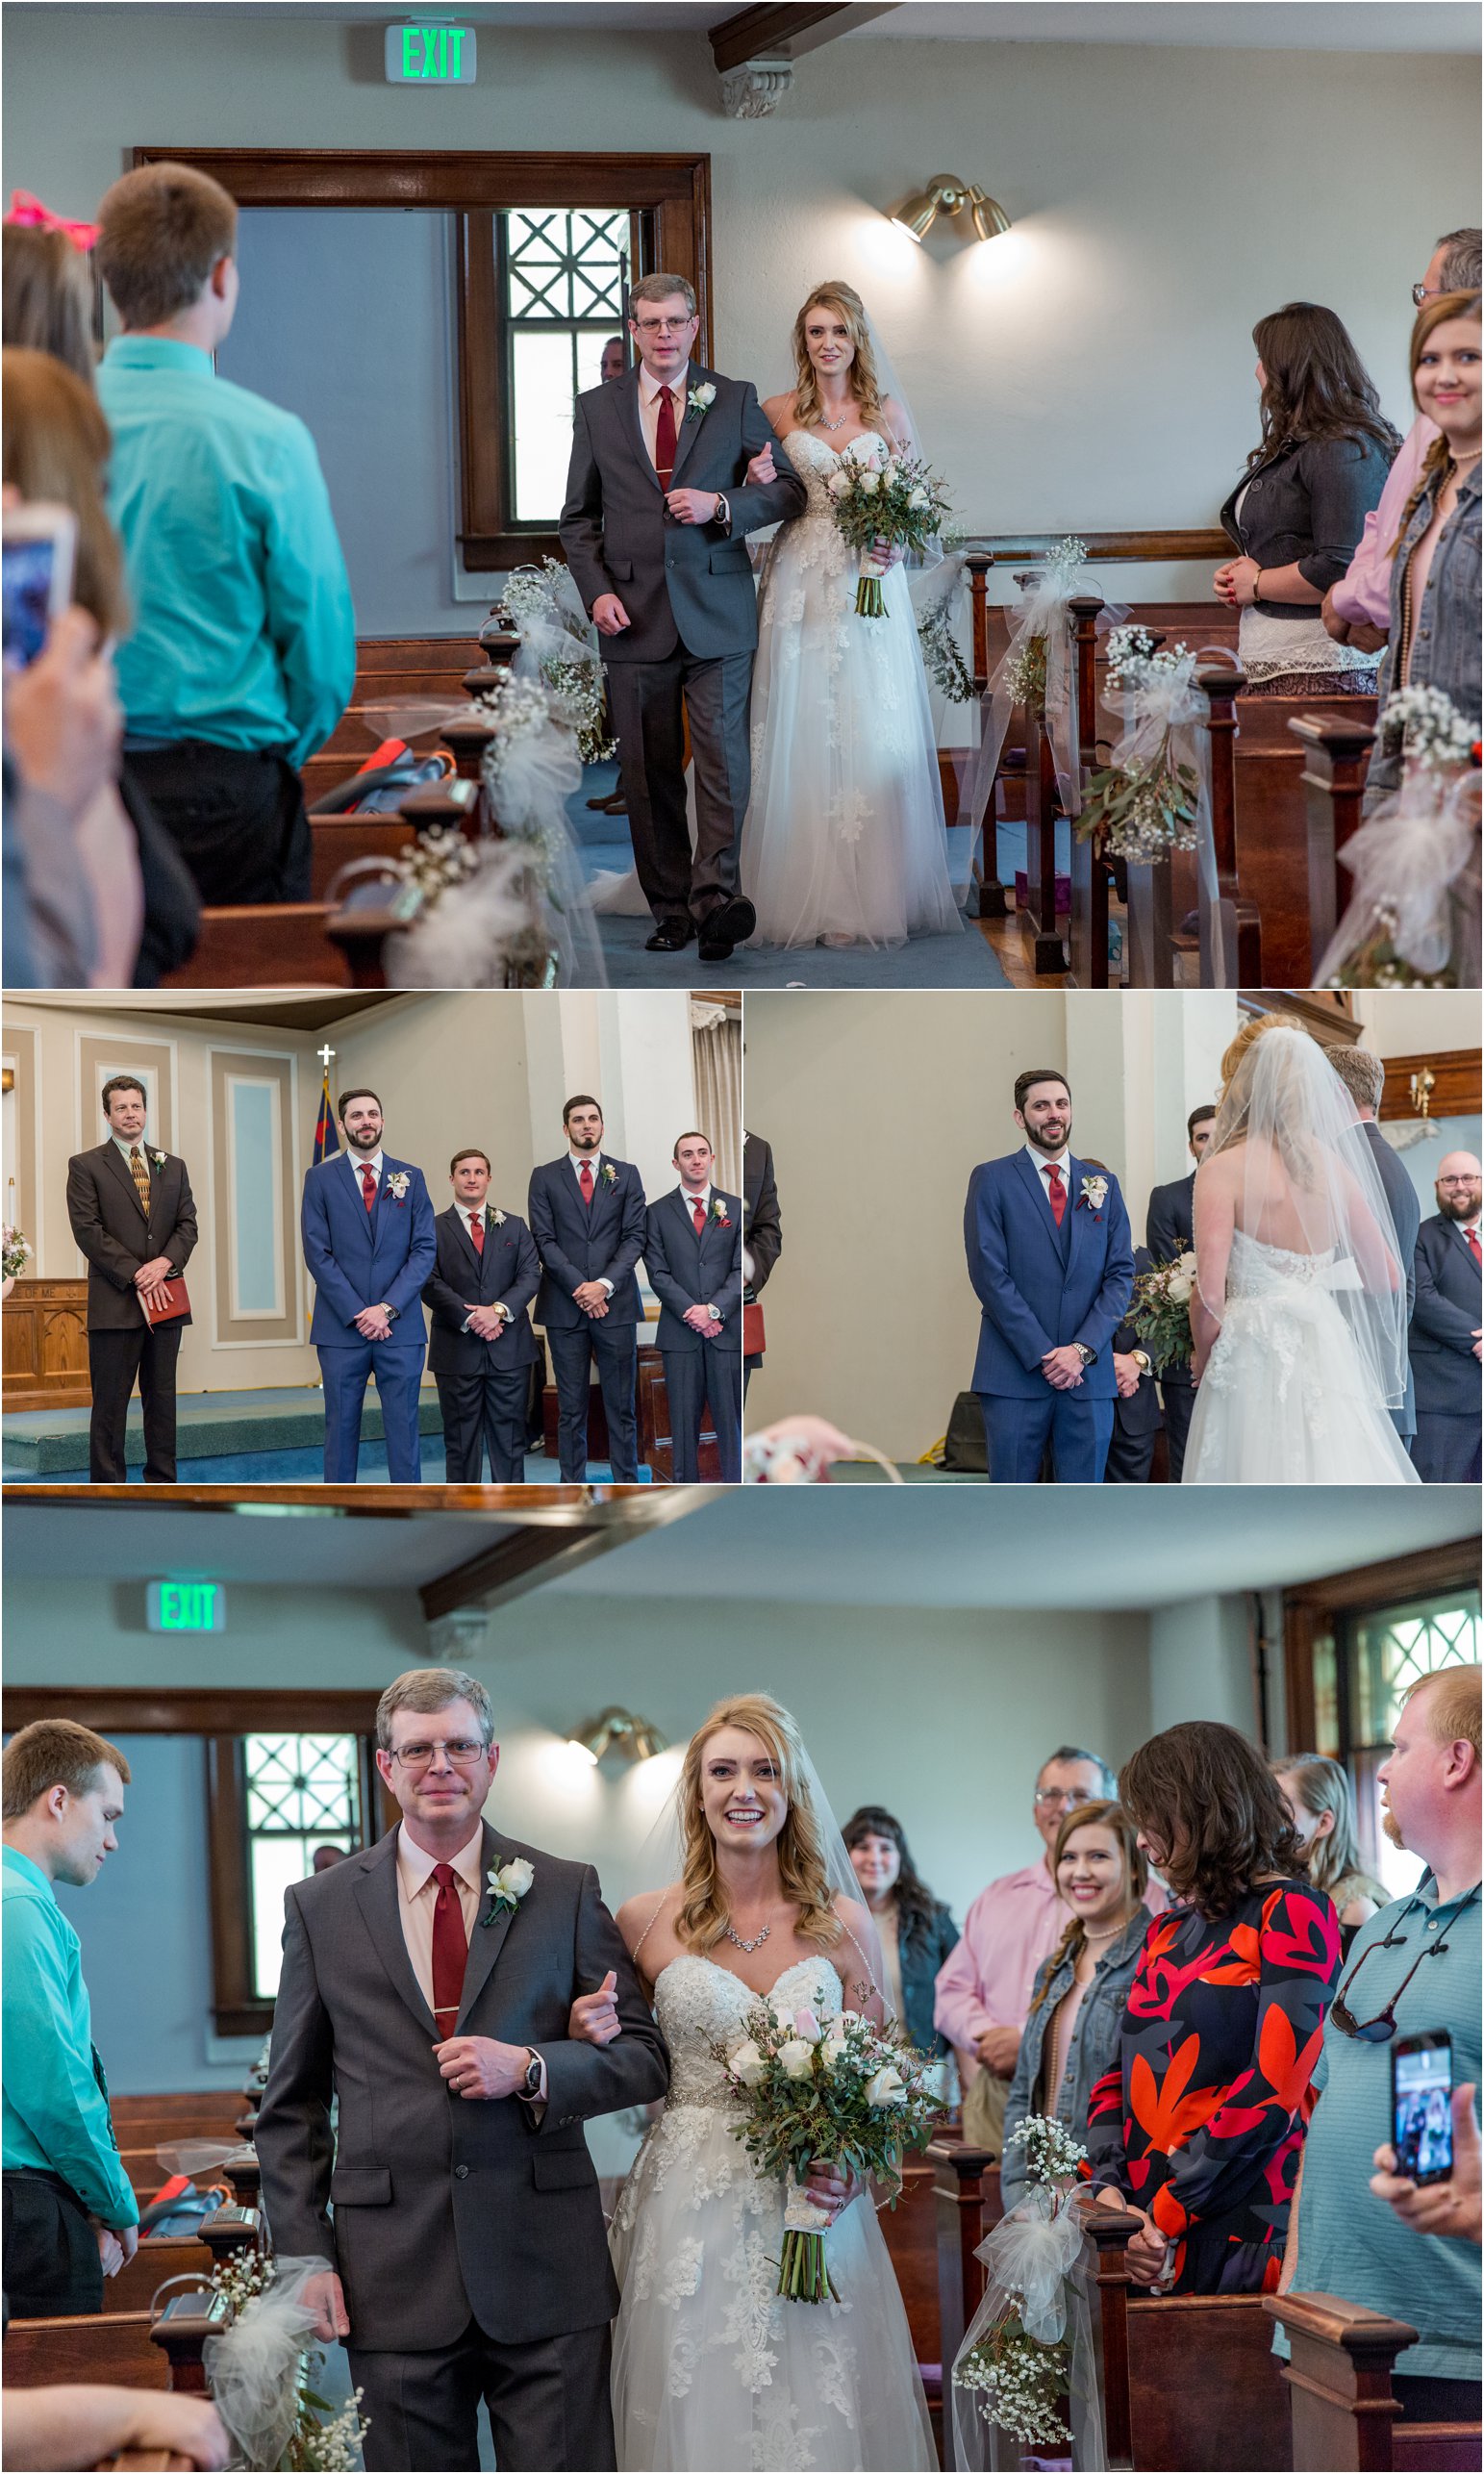 Greeley, Colorado Wedding by Northern Colorado Wedding Photographer